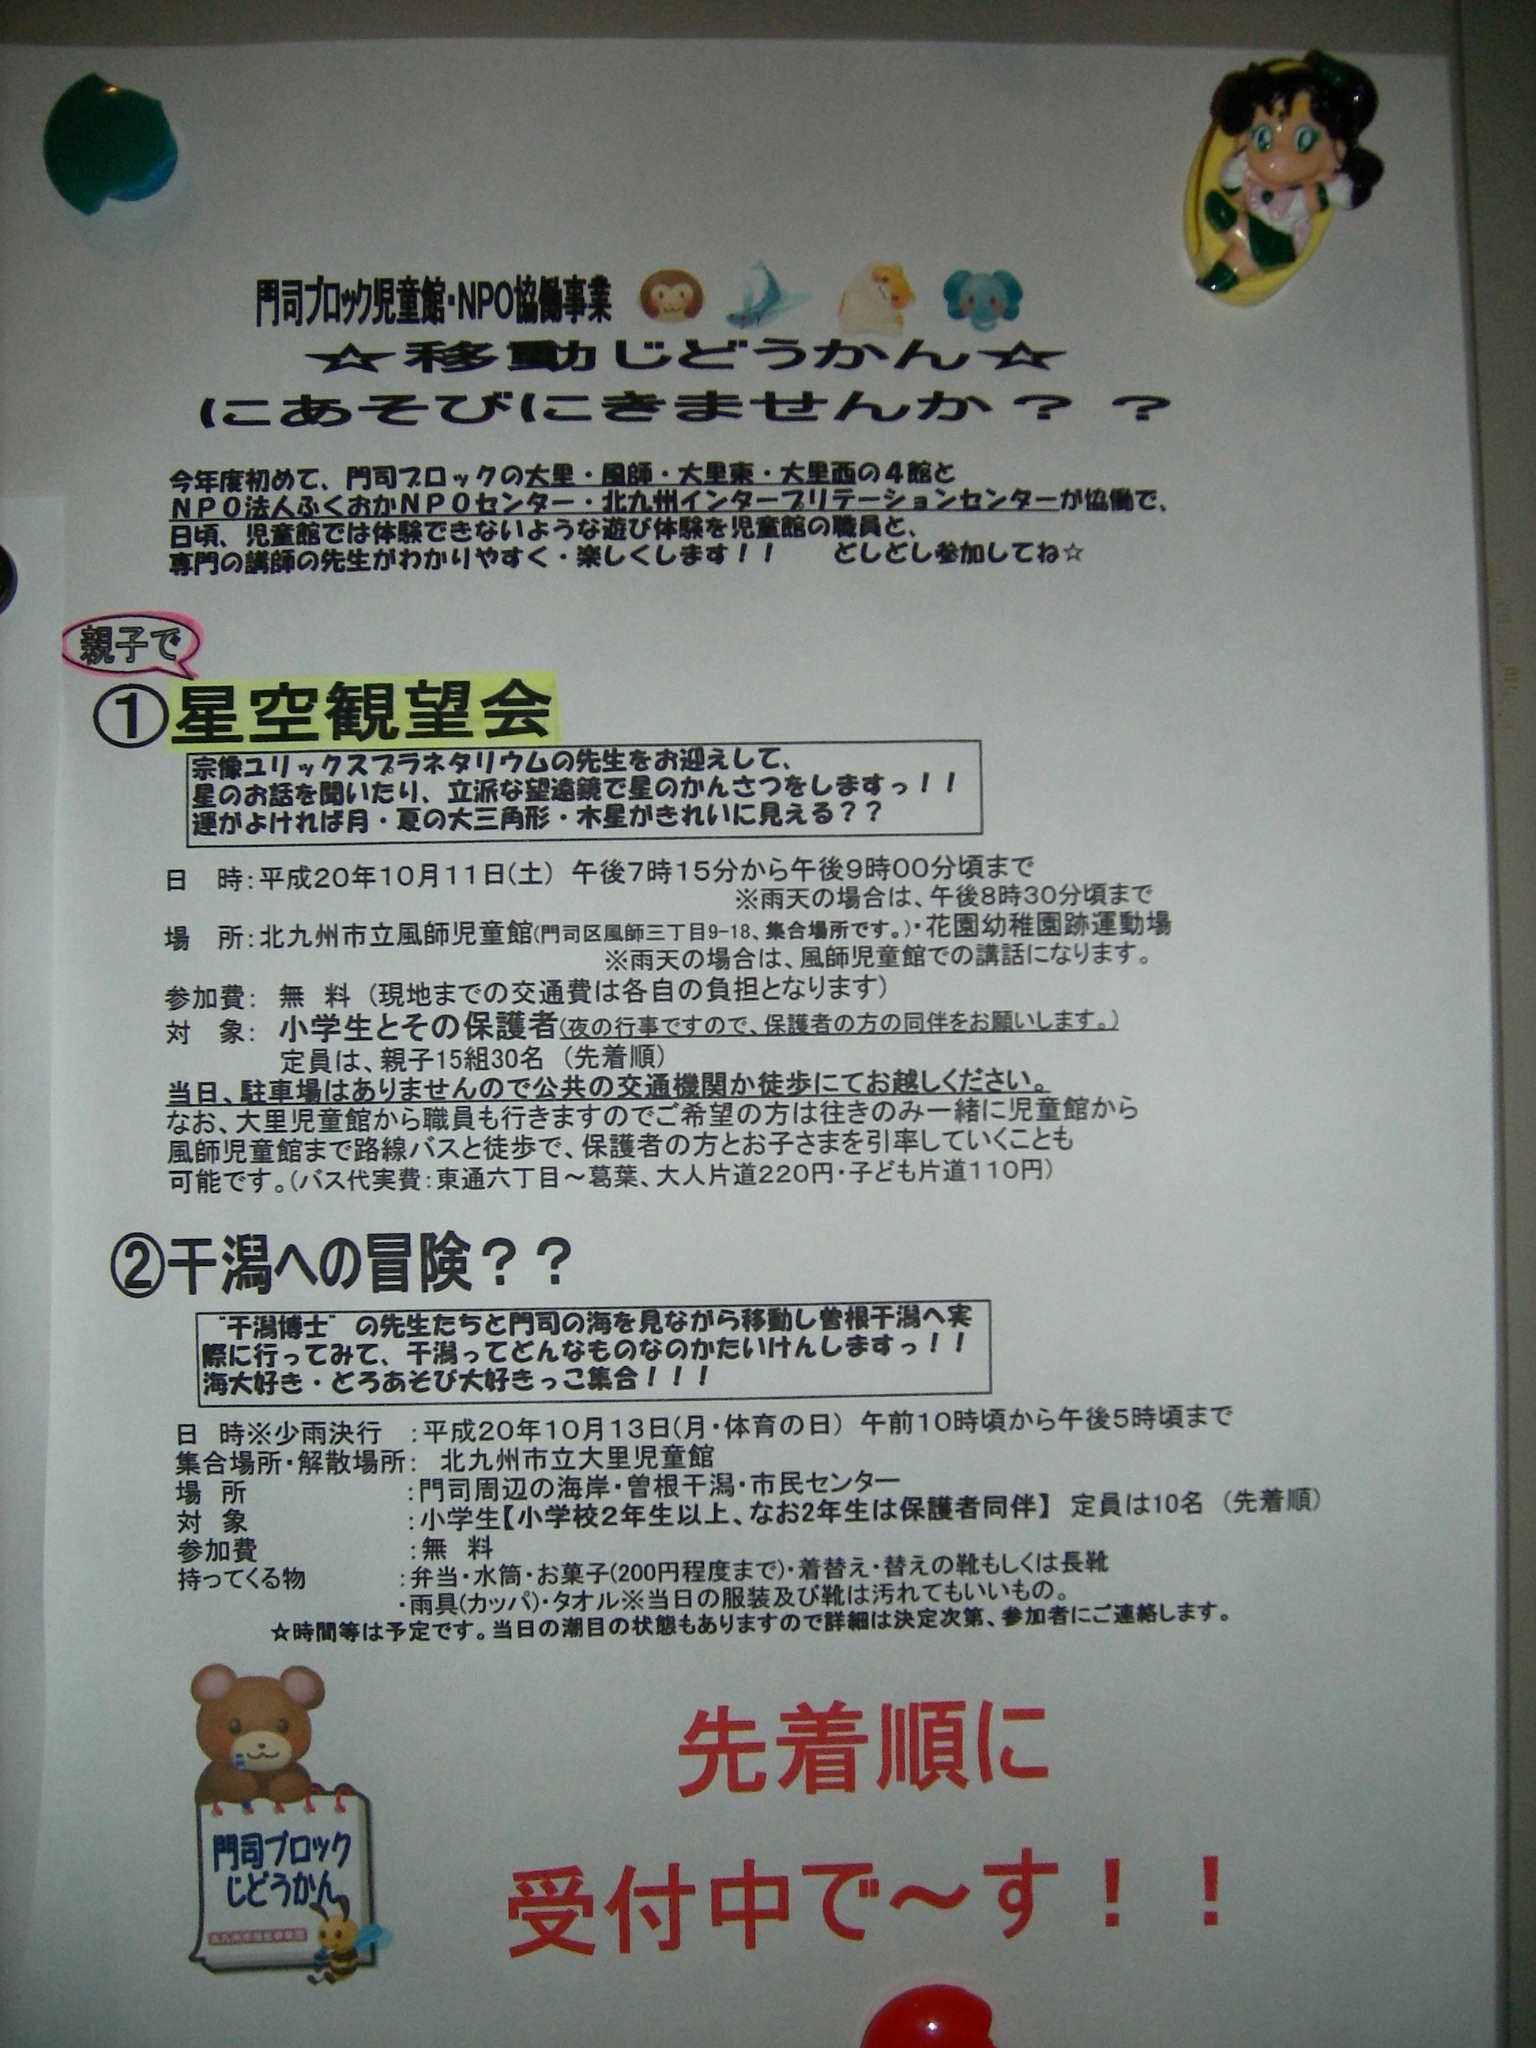 http://www.npo-dondoko.net/08fukuoka/blog/dairi-1_3.JPG